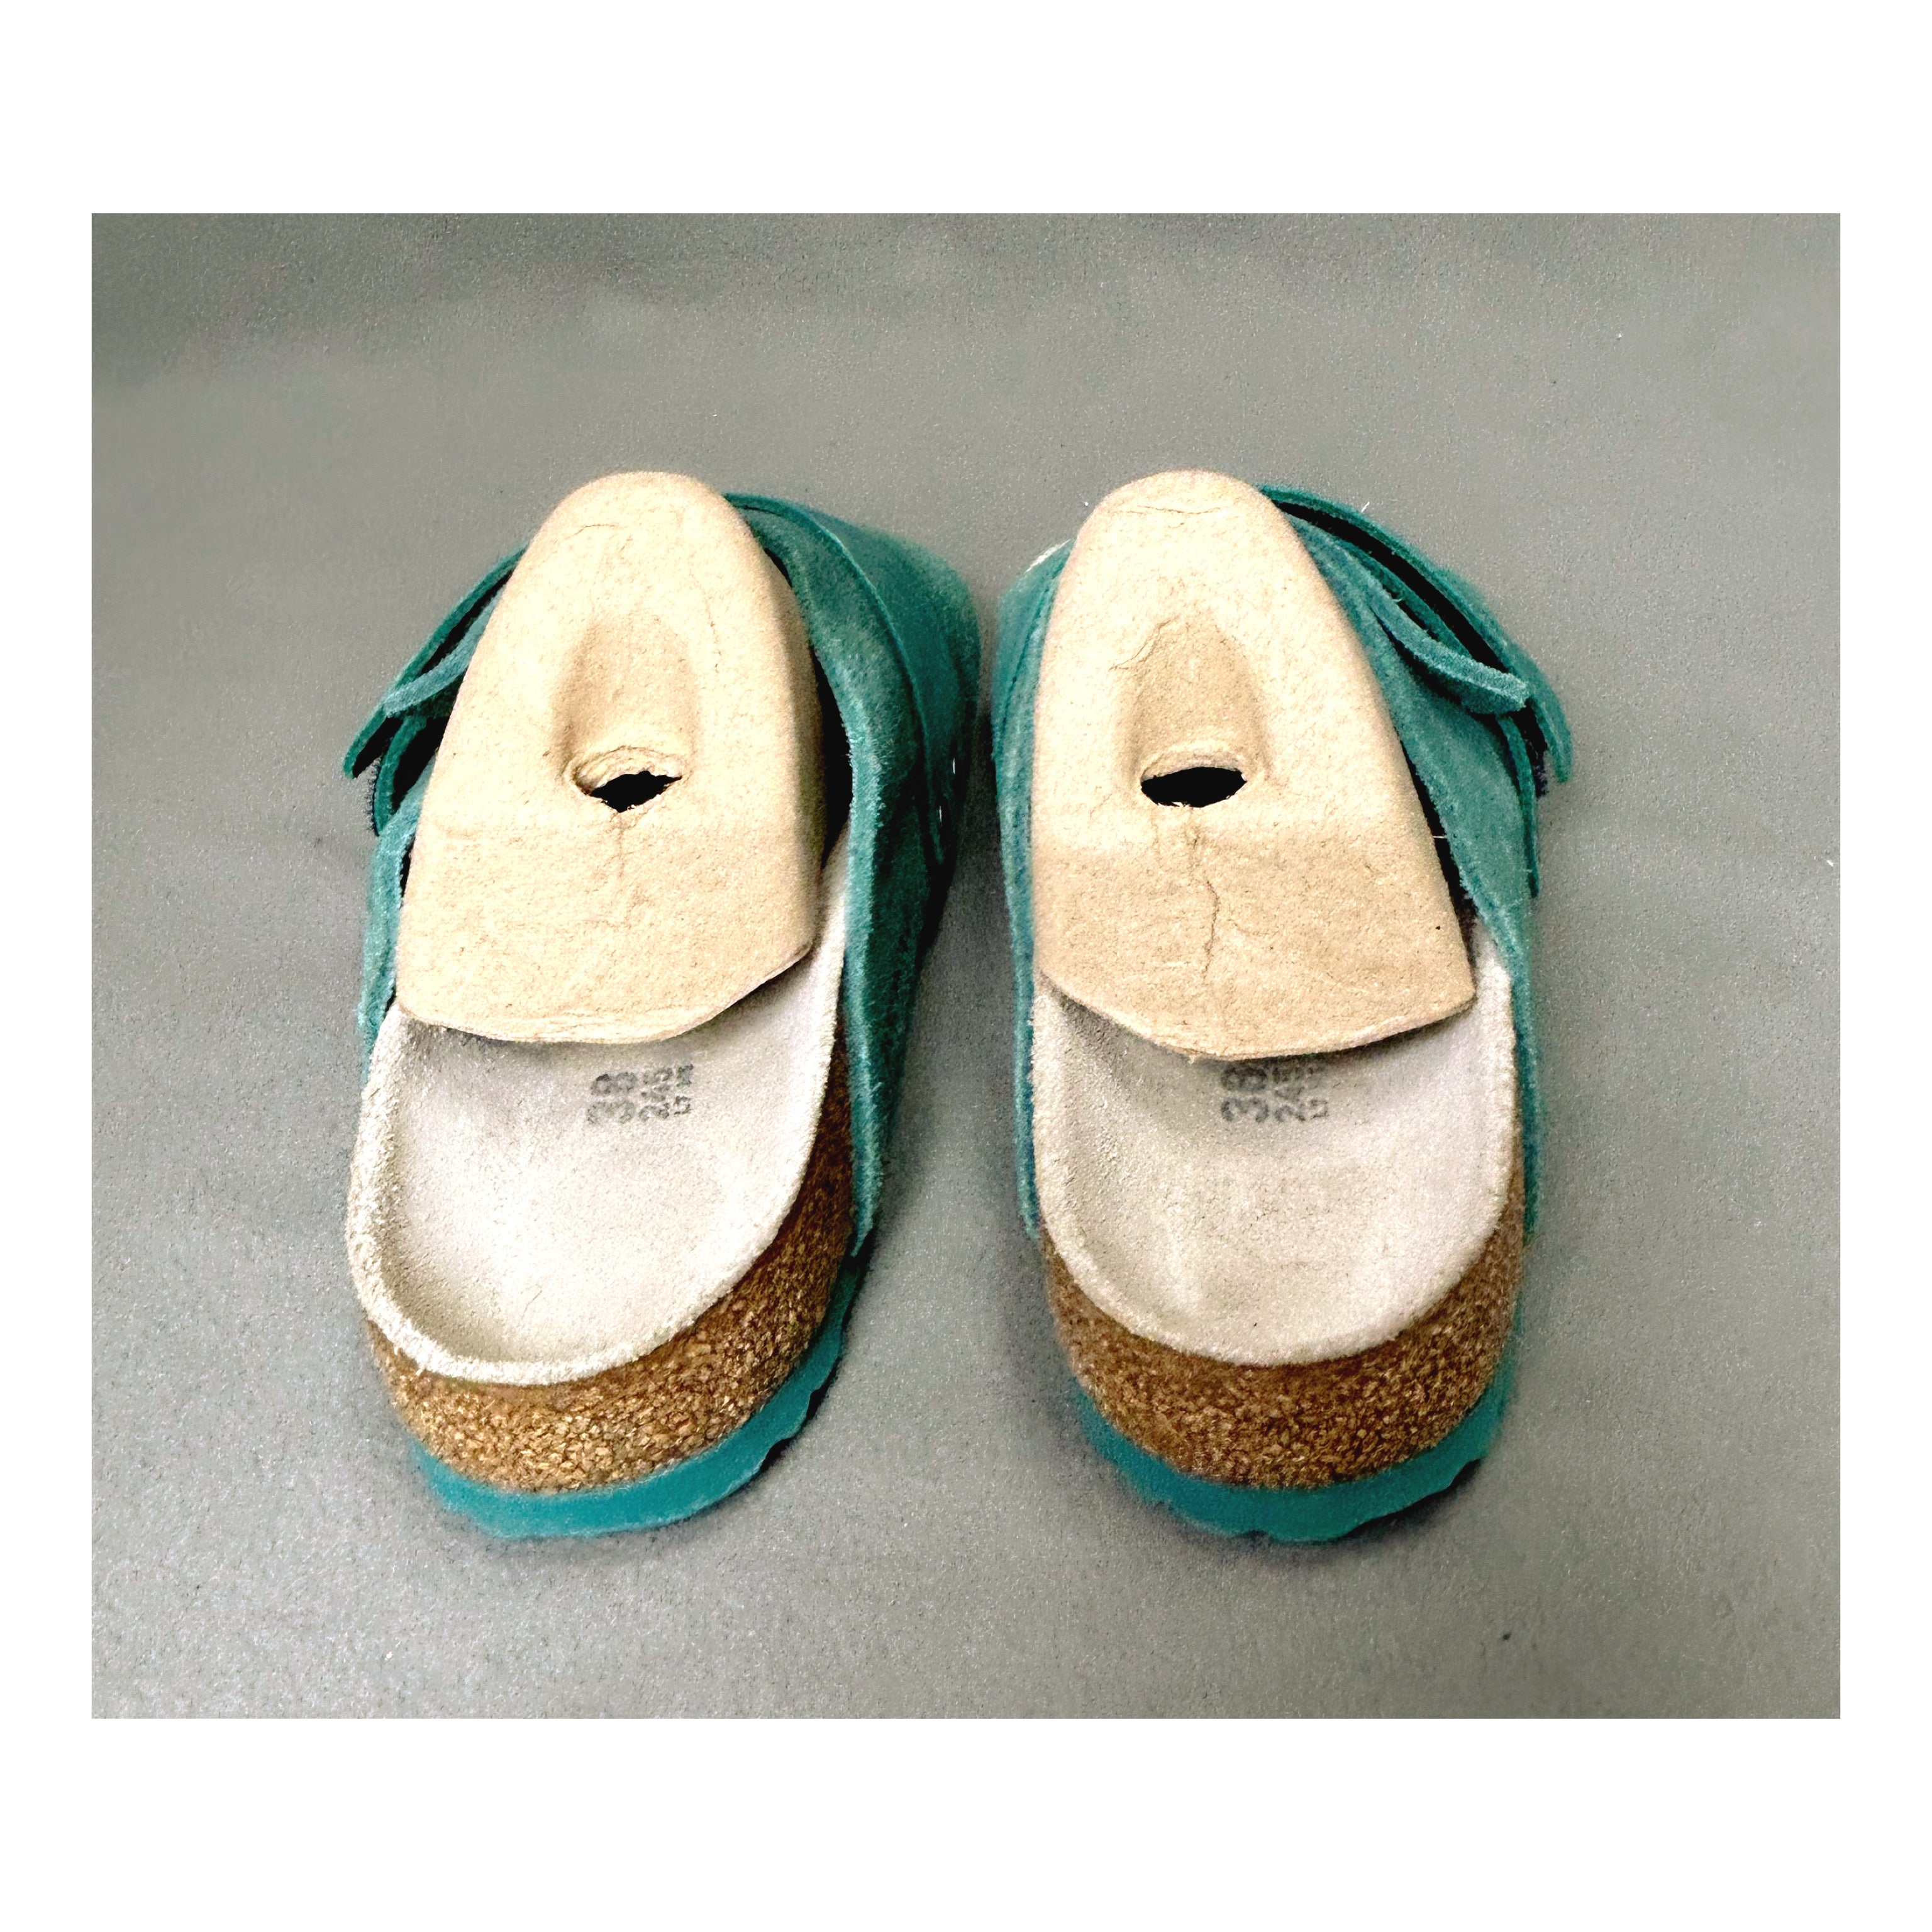 Birkenstock teal Kyoto sandals, size 7-7.5